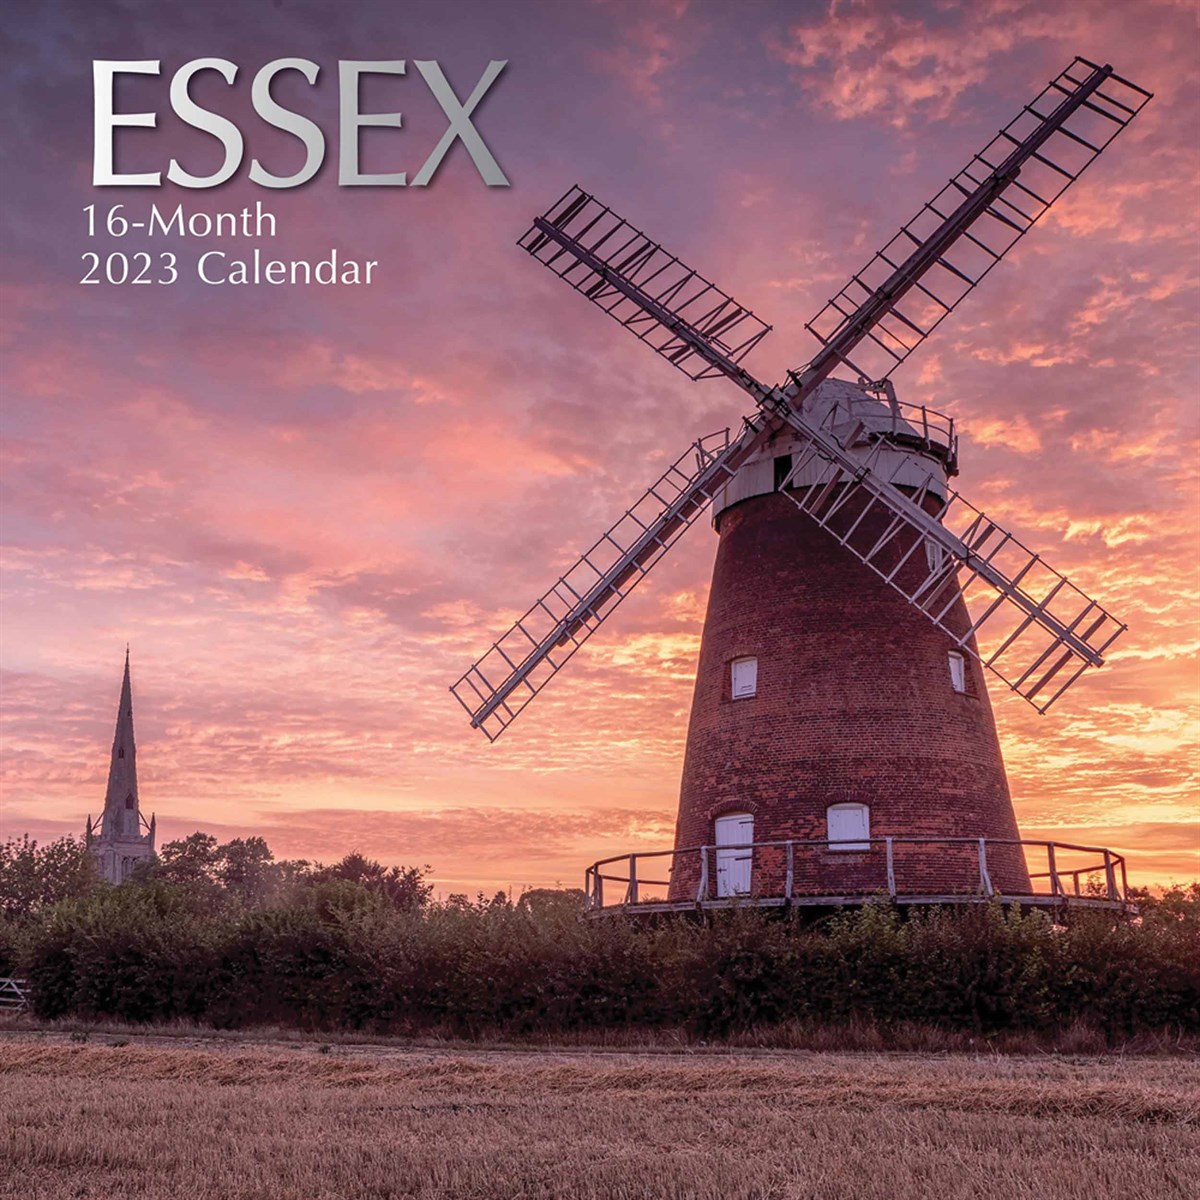 Essex 2023 Calendars